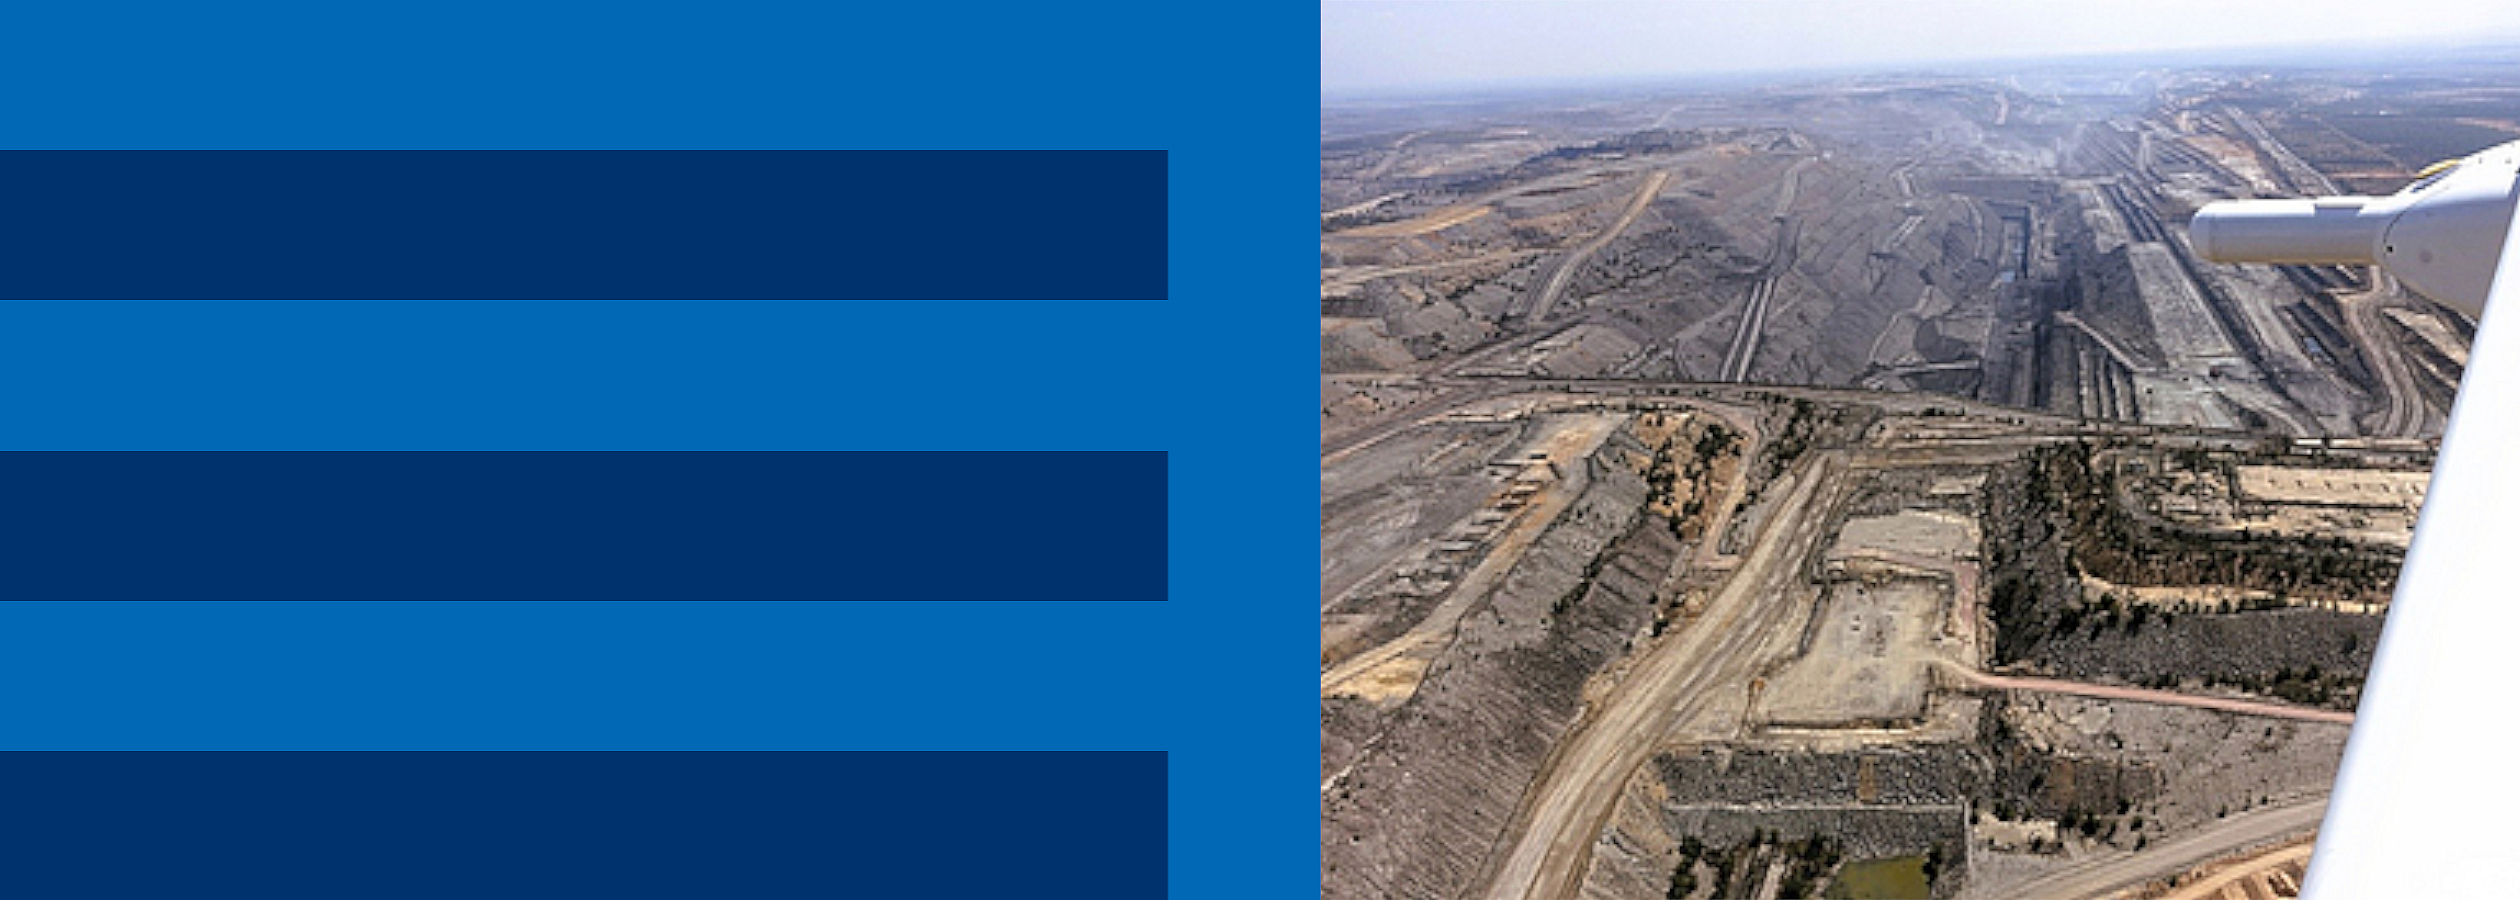 [Translate to English:] Foto eines Kohletagebaus im Bowen Basin, Queensland, Australien, aufgenommen von einem der ARA-Forschungsflugzeuge während eines Messfluges.